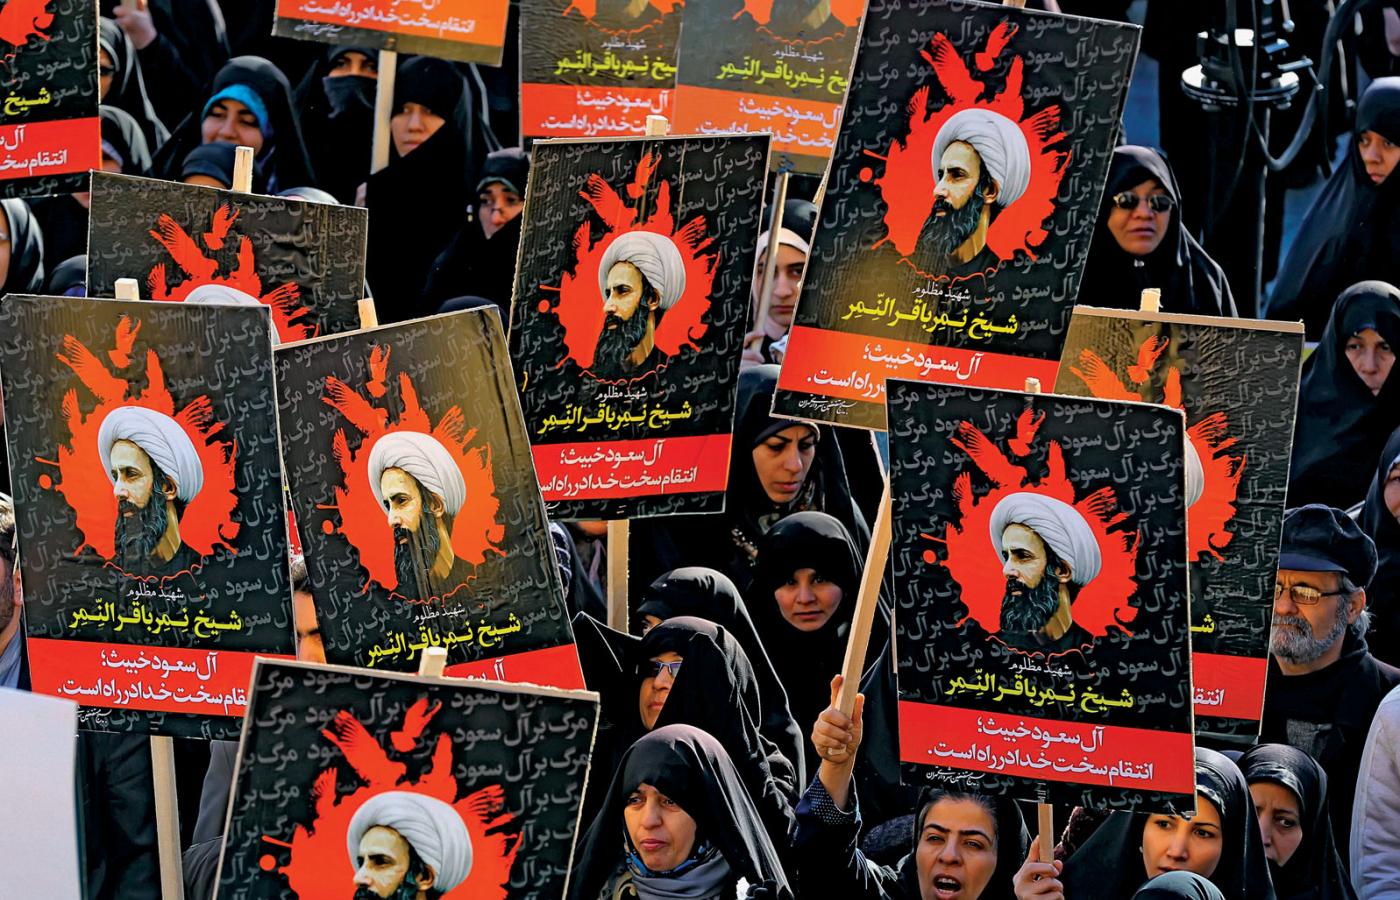 Masowy protest w Teheranie po wykonaniu wyroku śmierci na szyickim duchownym, skazanym przez władze Arabii Saudyjskiej